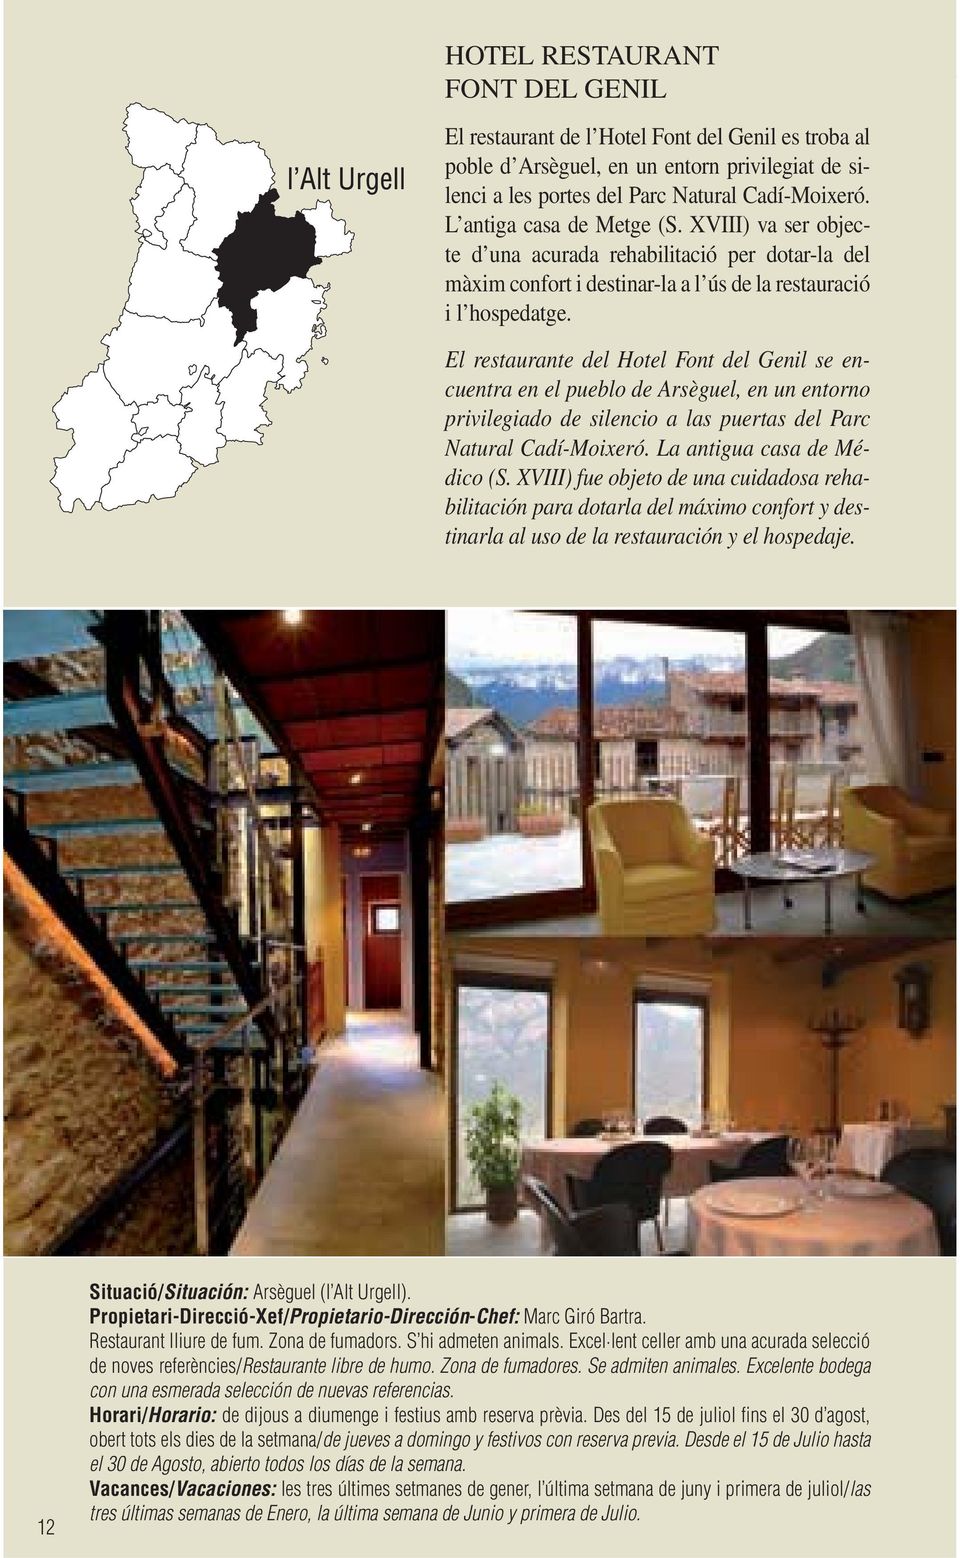 El restaurante del Hotel Font del Genil se encuentra en el pueblo de Arsèguel, en un entorno privilegiado de silencio a las puertas del Parc Natural Cadí-Moixeró. La antigua casa de Médico (S.